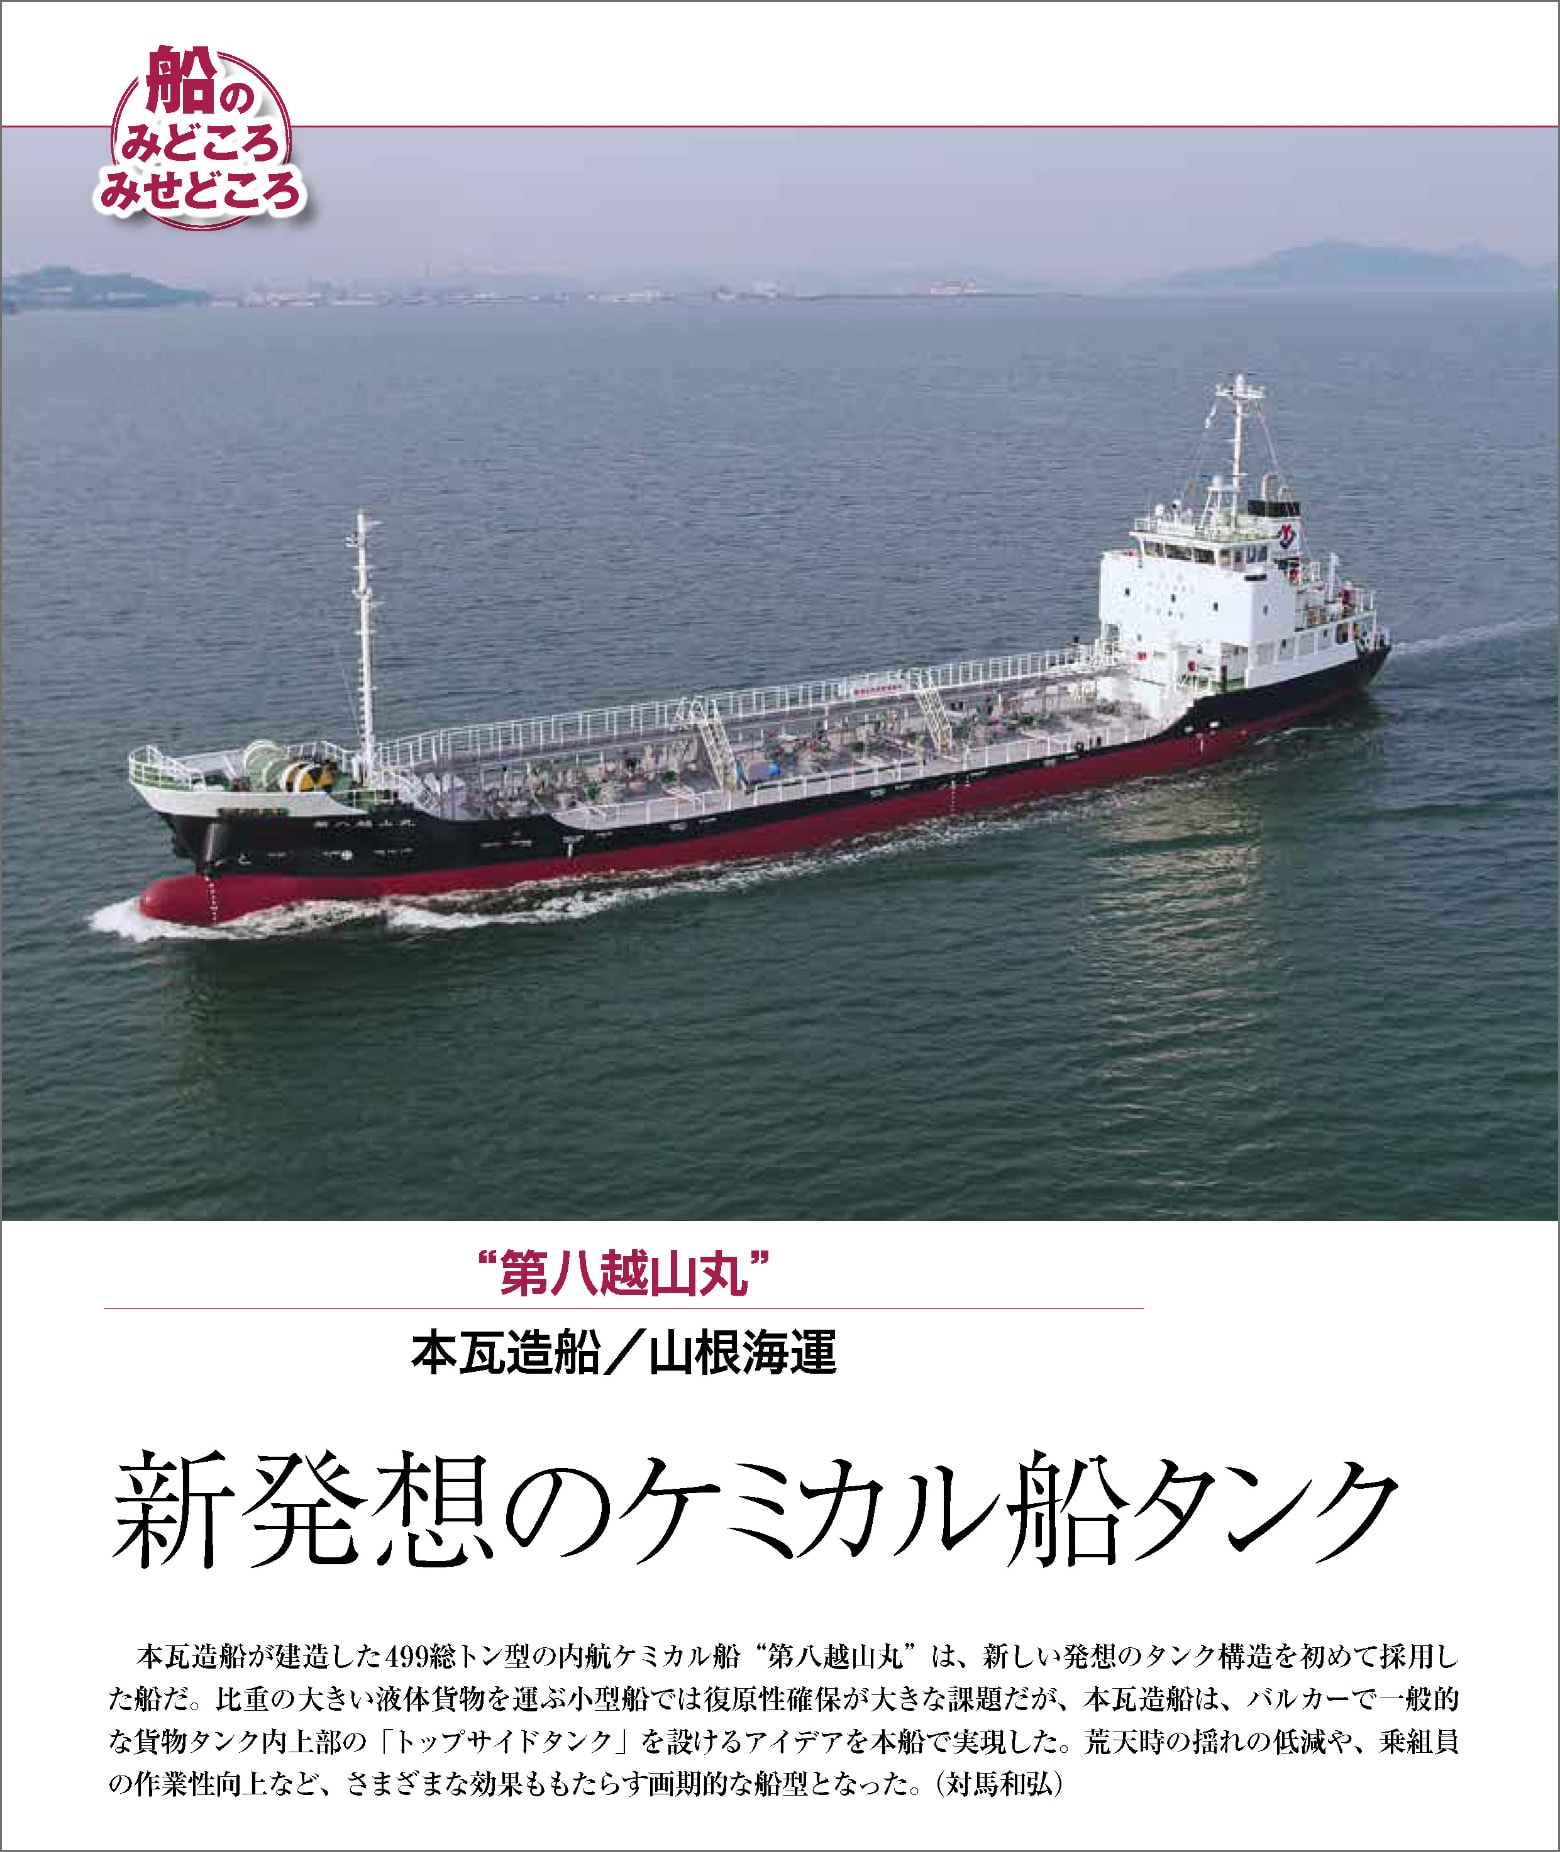 海事総合誌COMPASS2020年1月号（海事プレス社の許諾を得て掲載しています）